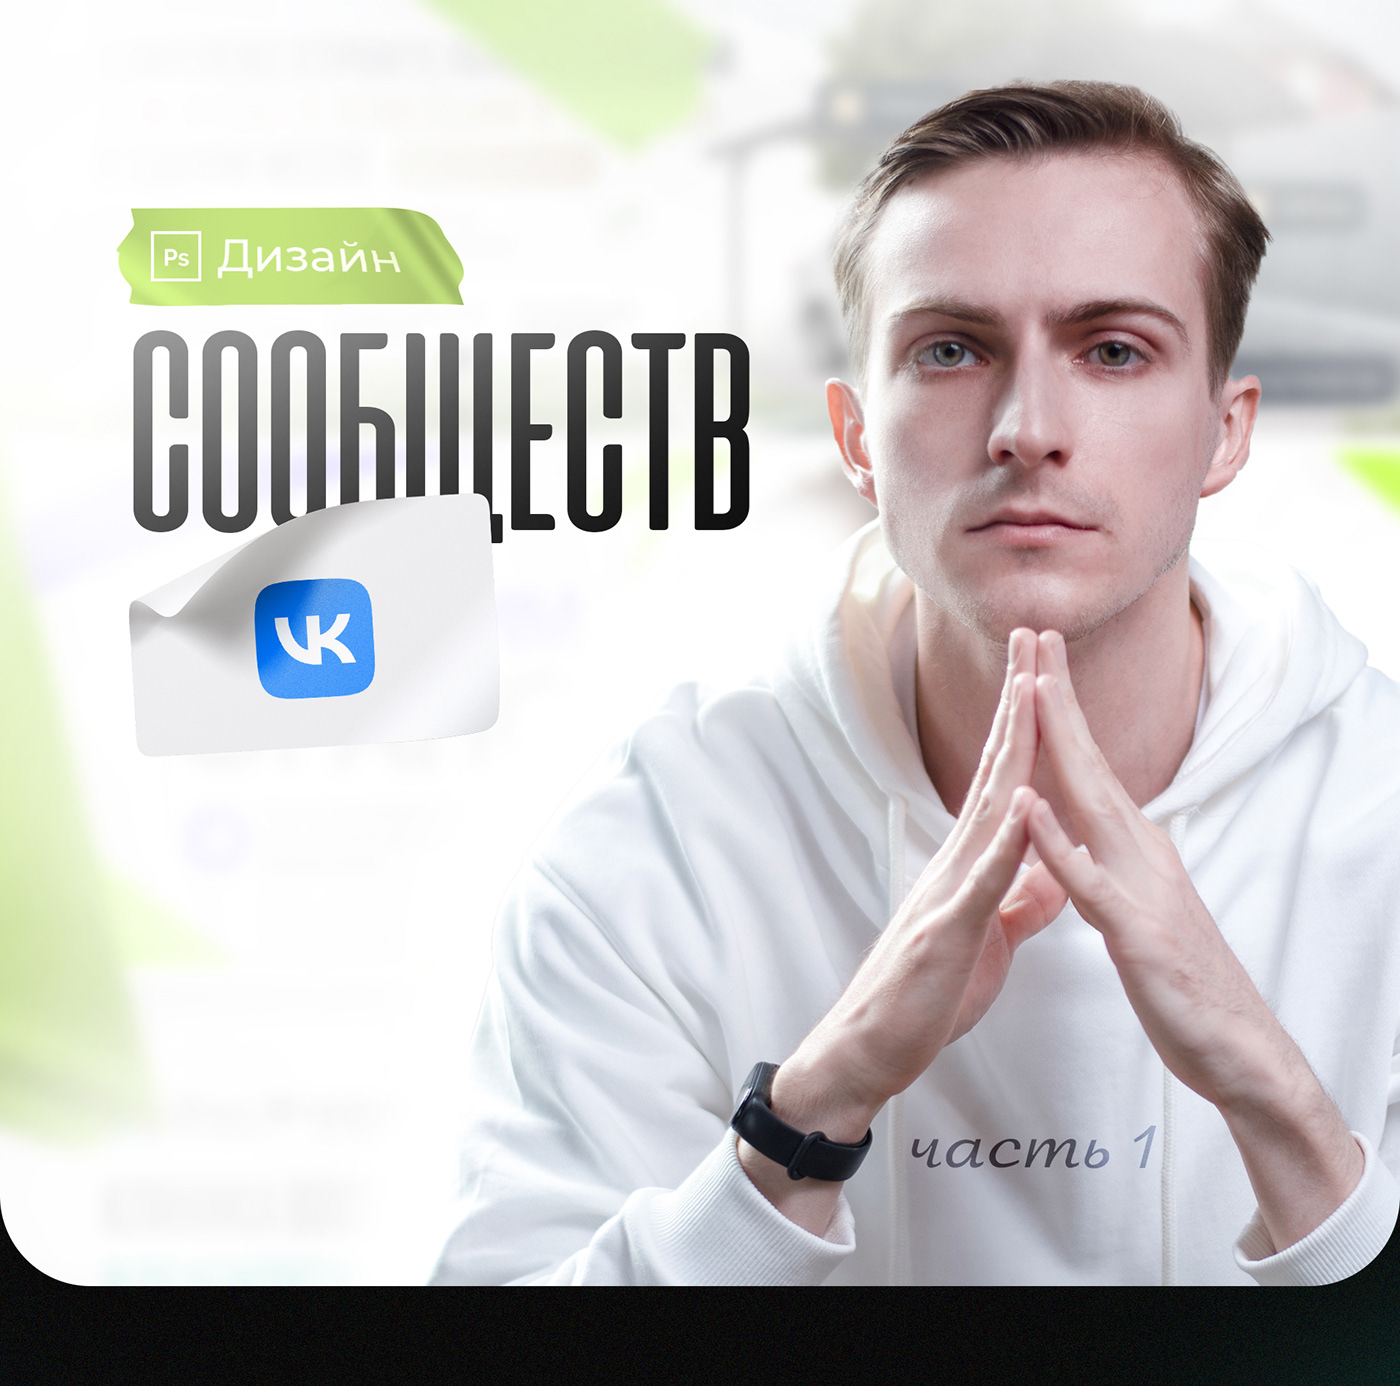 Оформление VK Оформление группы Оформление соц сетей дизайн ВК вконтакте VK социальные сети сообщество вк соо